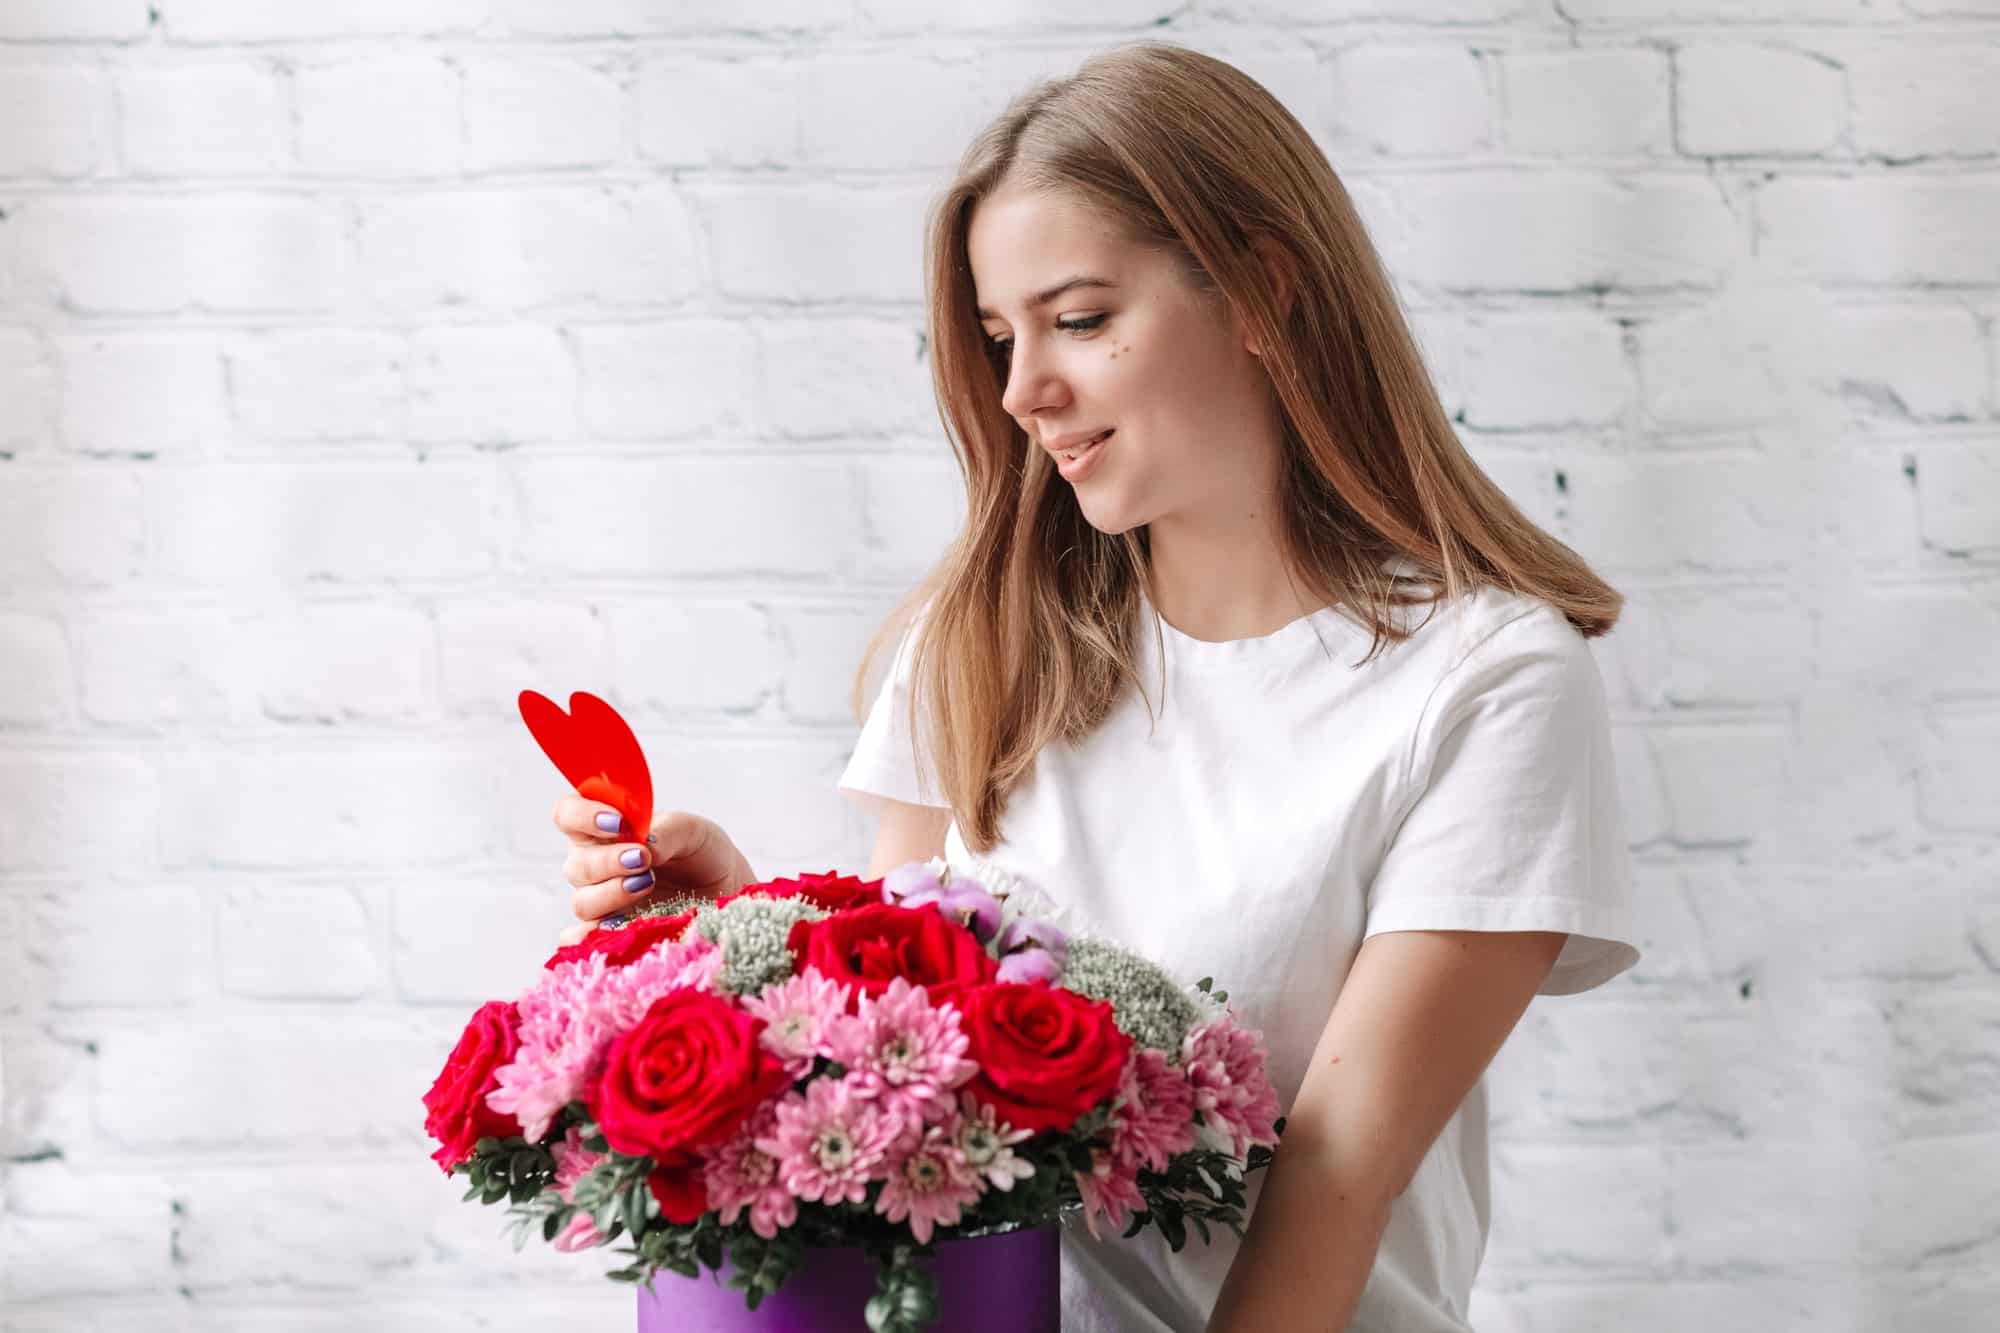 Envoi de fleurs : trouvez l’inspiration pour toutes les occasions